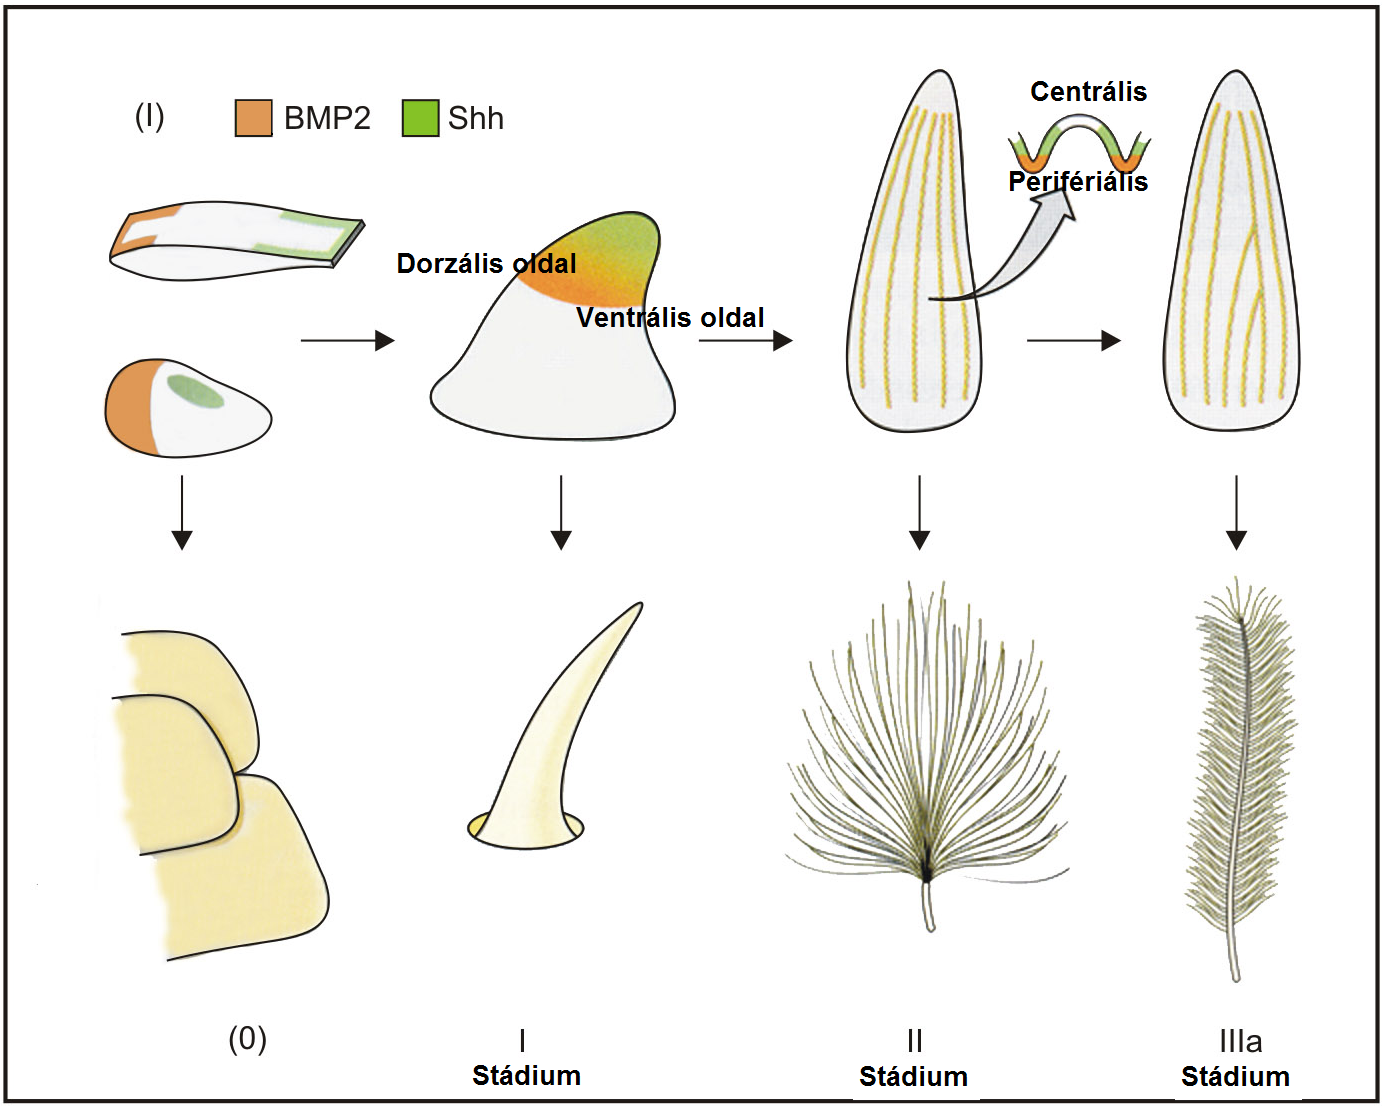 Az Shh-BMP2-modul sorozatos újrafelhasználása a toll fejlődése és evolúciója során. Az alsó sorban a madártoll fejlődési stádiumai, a felső sorban a két jelátviteli útvonal kifejeződési modul feltételezett alakulása látható a dinoszaurusz-pikkelyekben. A toll evolúciója során az I-IIIa stádiumok az Shh-BMP2-modul kifejeződésének megváltozására vezethető vissza. I. stádium: az első meghosszabbodott csőszerű toll egy primitív Archosaurus pikkelyből származtatható, az Shh-BMP2 disztális koexpressziójának kialakulása után. A II. stádium az első elágazó pehelyszerű toll az Shh-BMP2 hosszanti doménjainak kialakulása után fejlődött volna ki. Az Shh-BMP2 kifejeződés centrális-periferiális polaritása vezetett az első elágazó tollrostokból álló tollak kialakulásához. A IIIa stádium úgy alakult ki, hogy a longitudinális Shh-BMP2 domén kifejeződése dorzális irányba megszűnt, így a tollrostok helikális irányba növekedtek tovább, így a tollrostok egyesülésével létrejött a tollcséve, és a két zászló (vexillum)